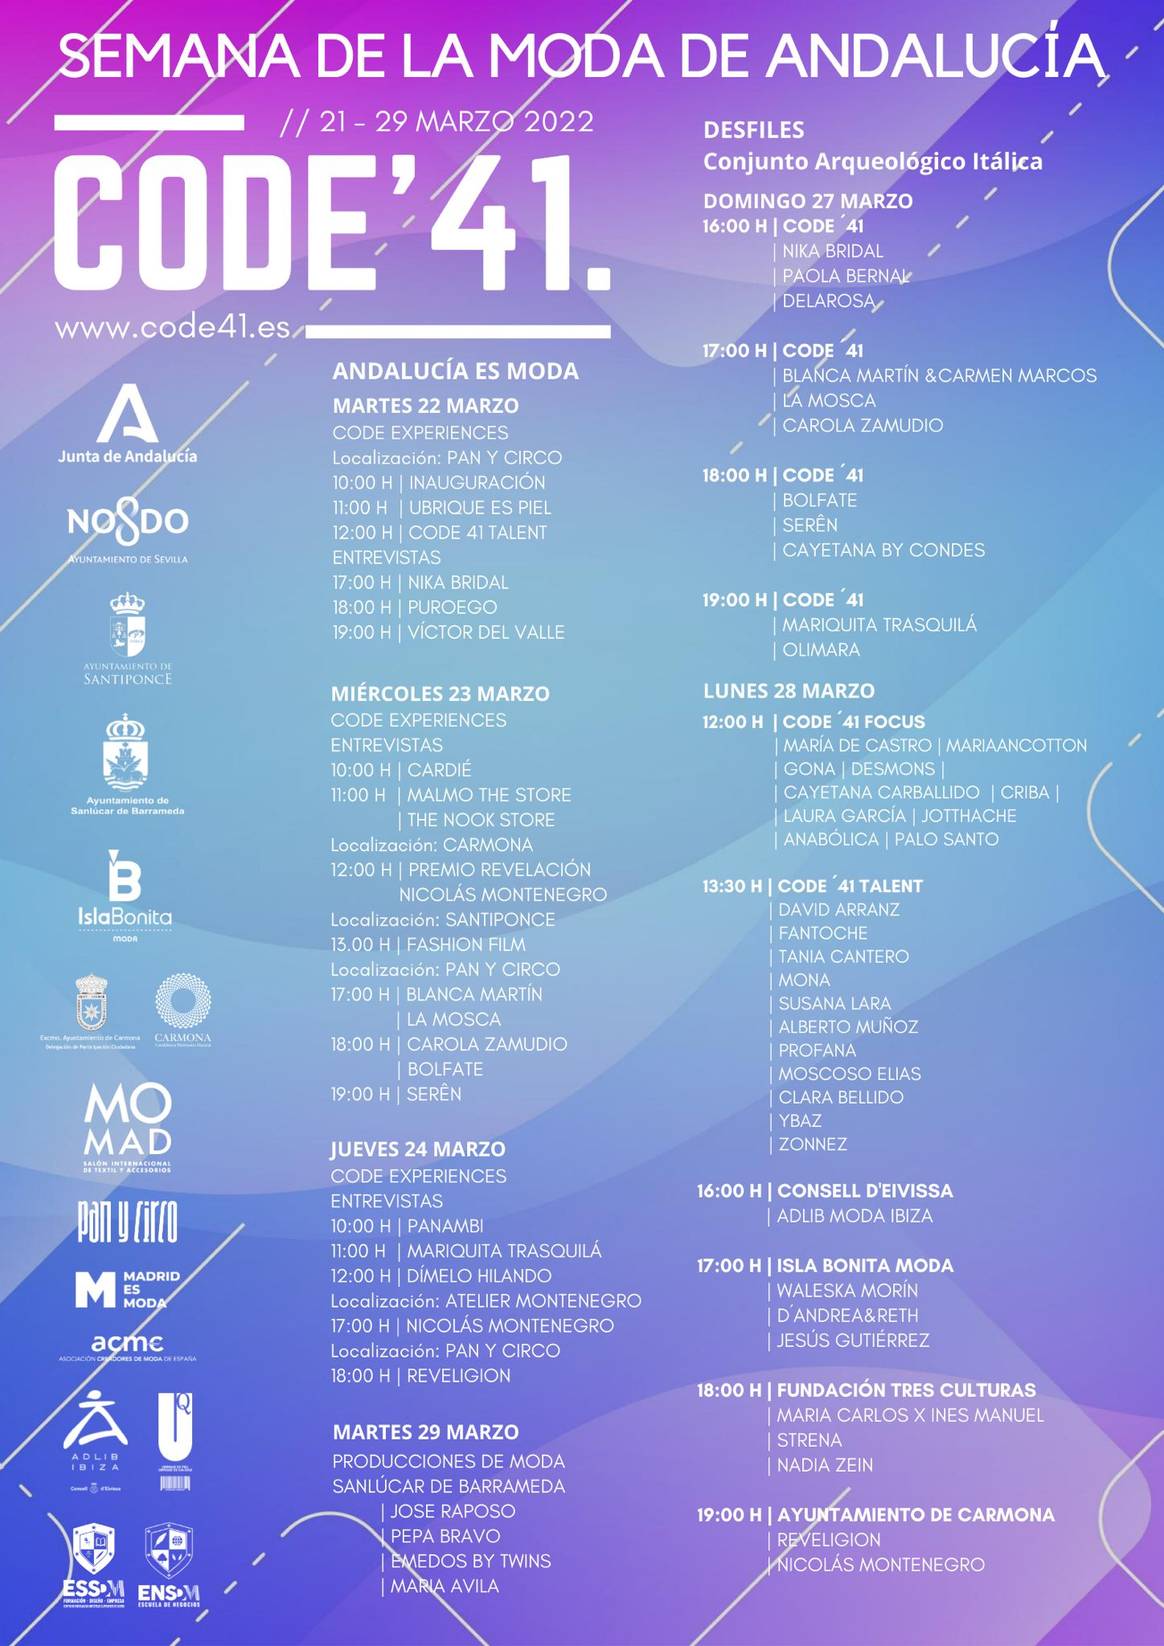 La próxima edición de Code41, el escaparate de la moda andaluza, vuelve del 21 al 29 de marzo